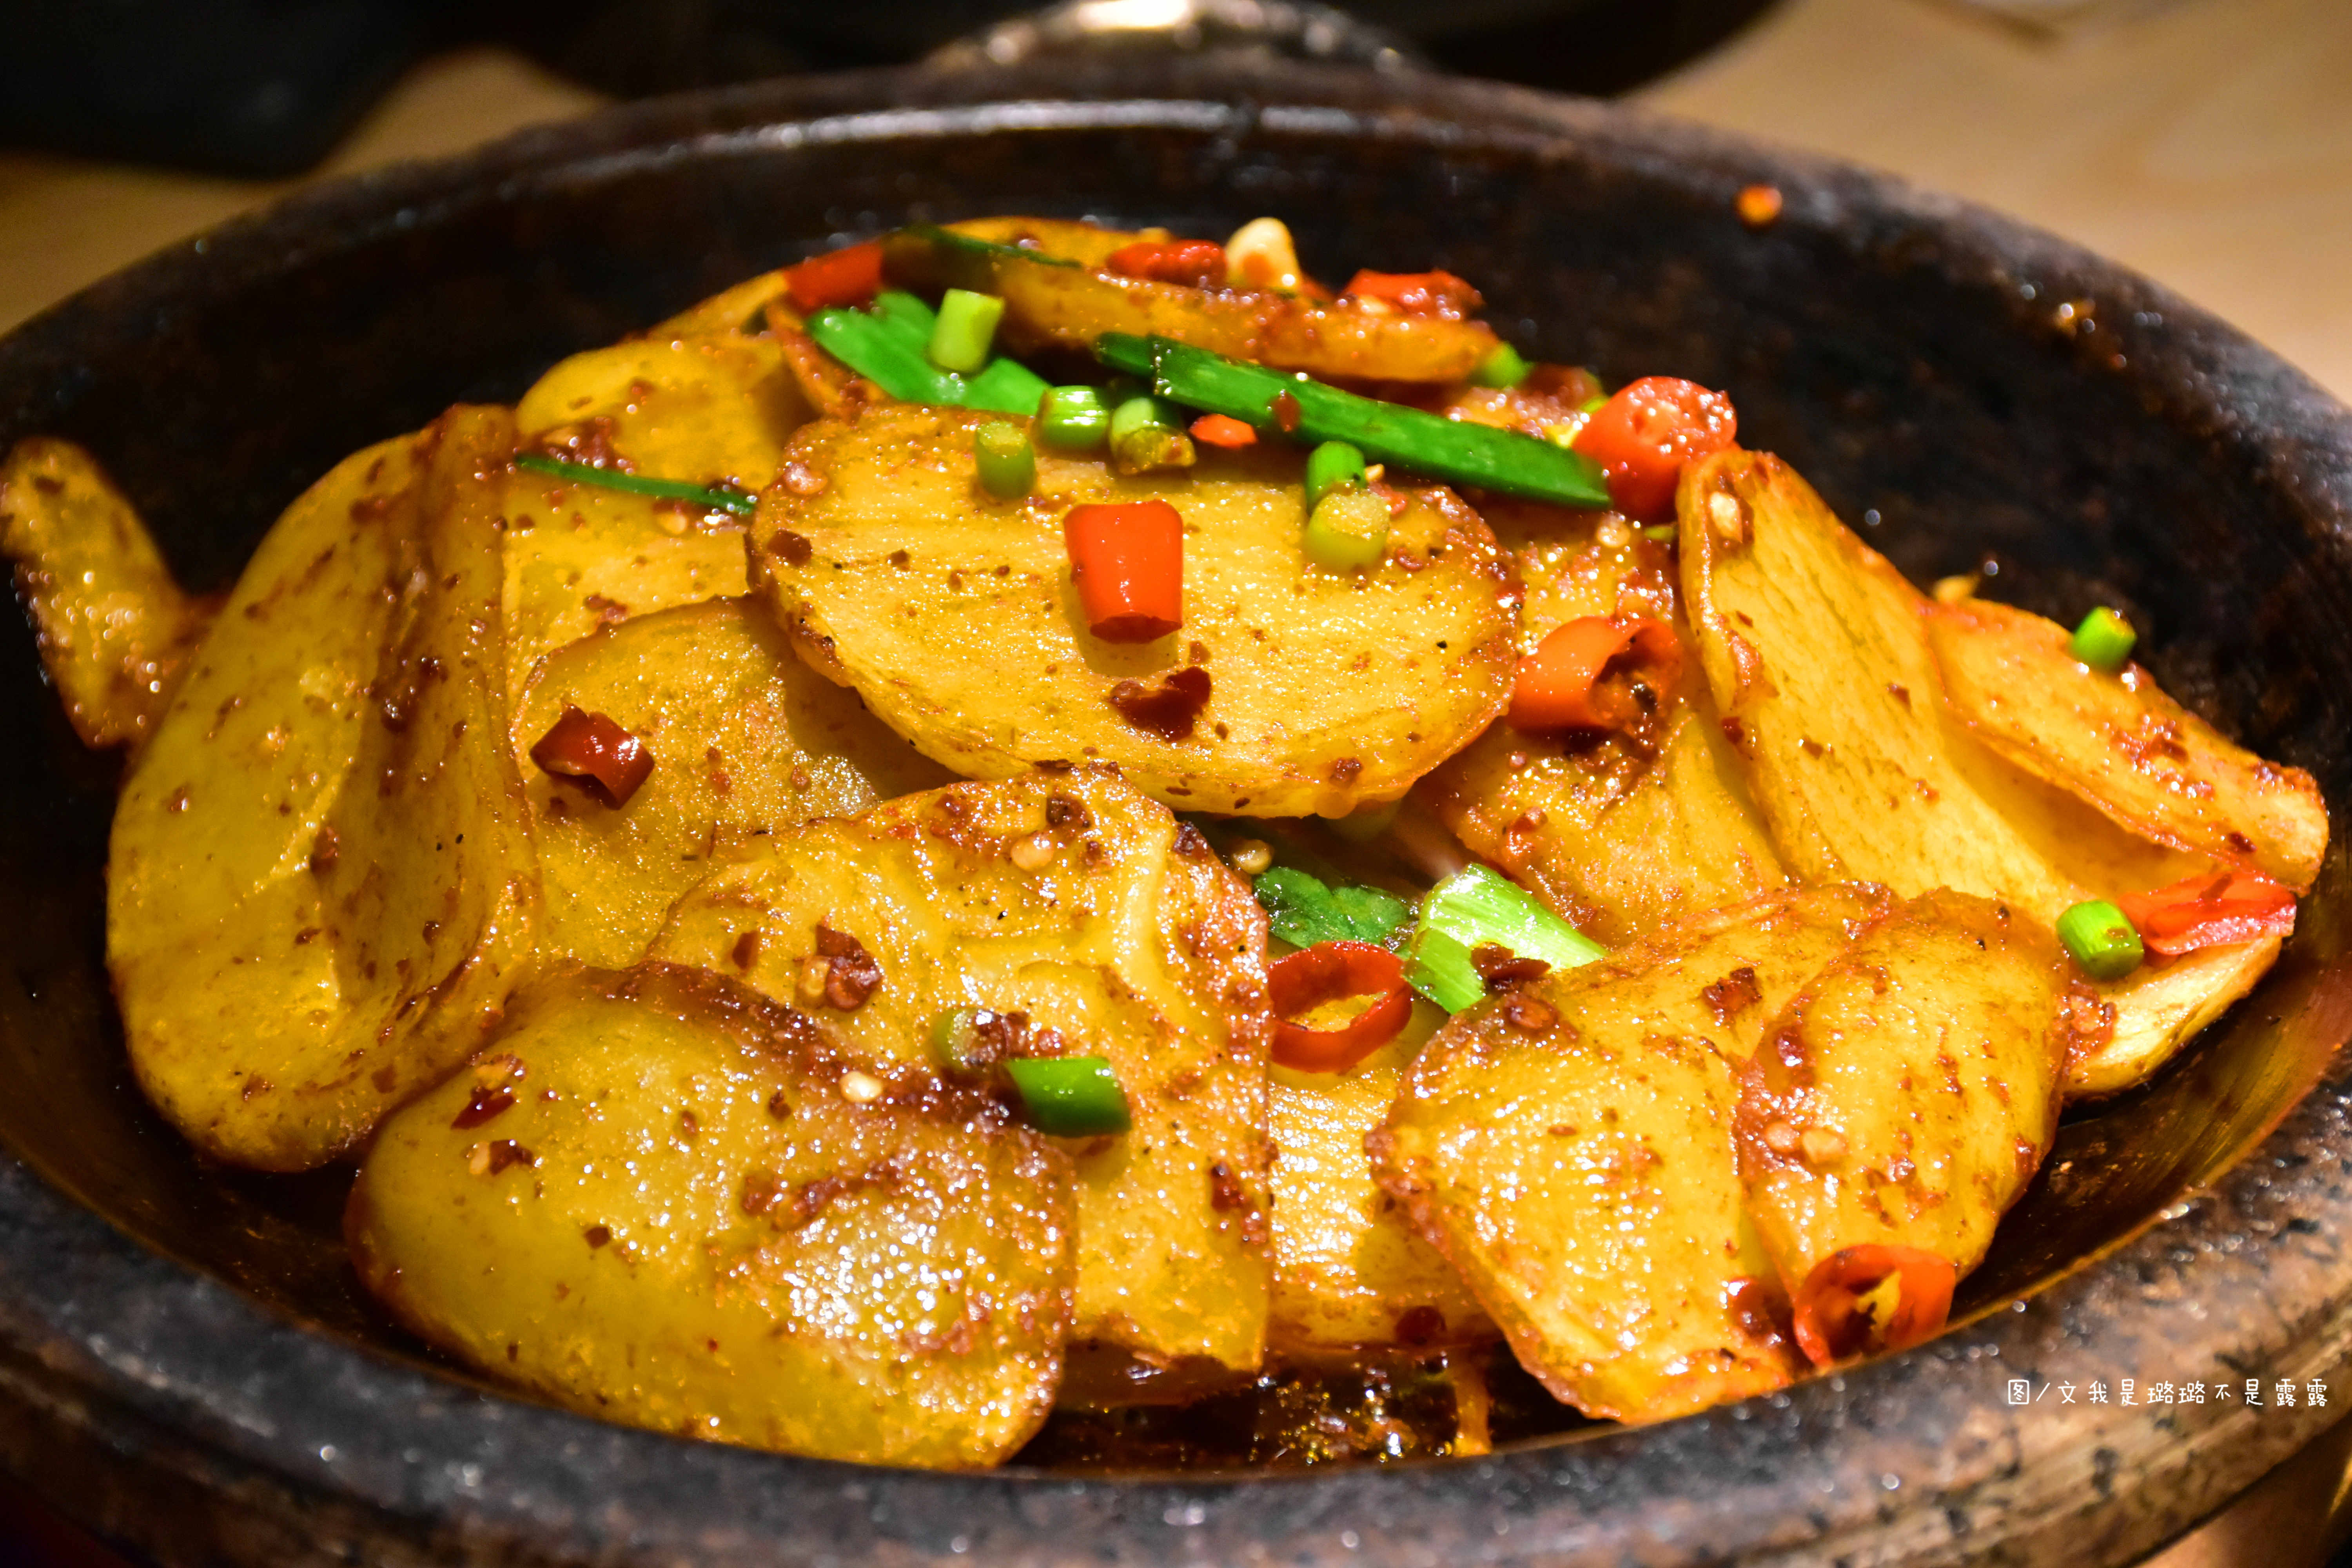 【石锅土豆片】厚切的土豆片,在热油和石锅的作用下,散发出淀粉类食品